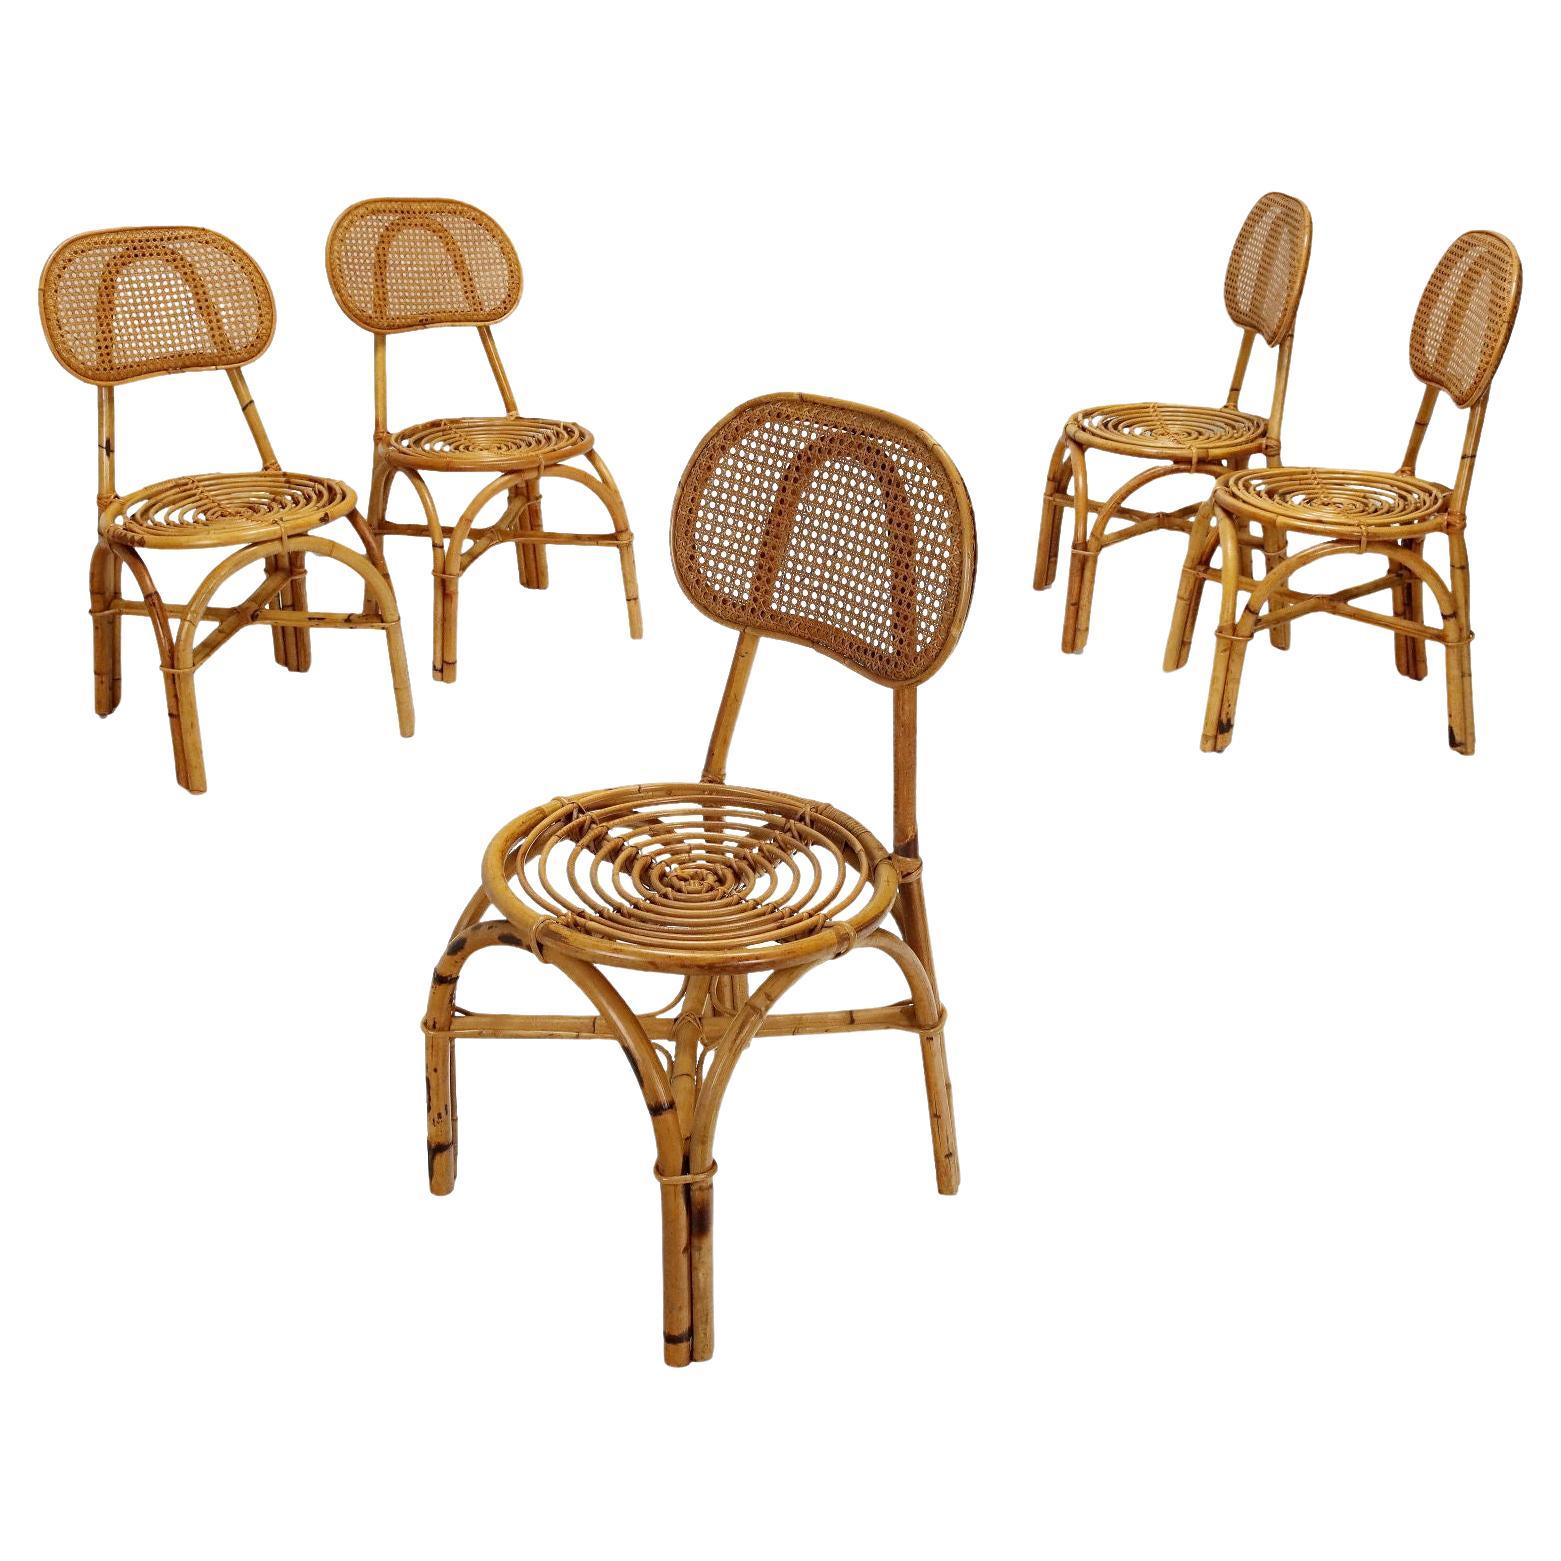 Juego de cinco sillas de bambú de los años 50-60